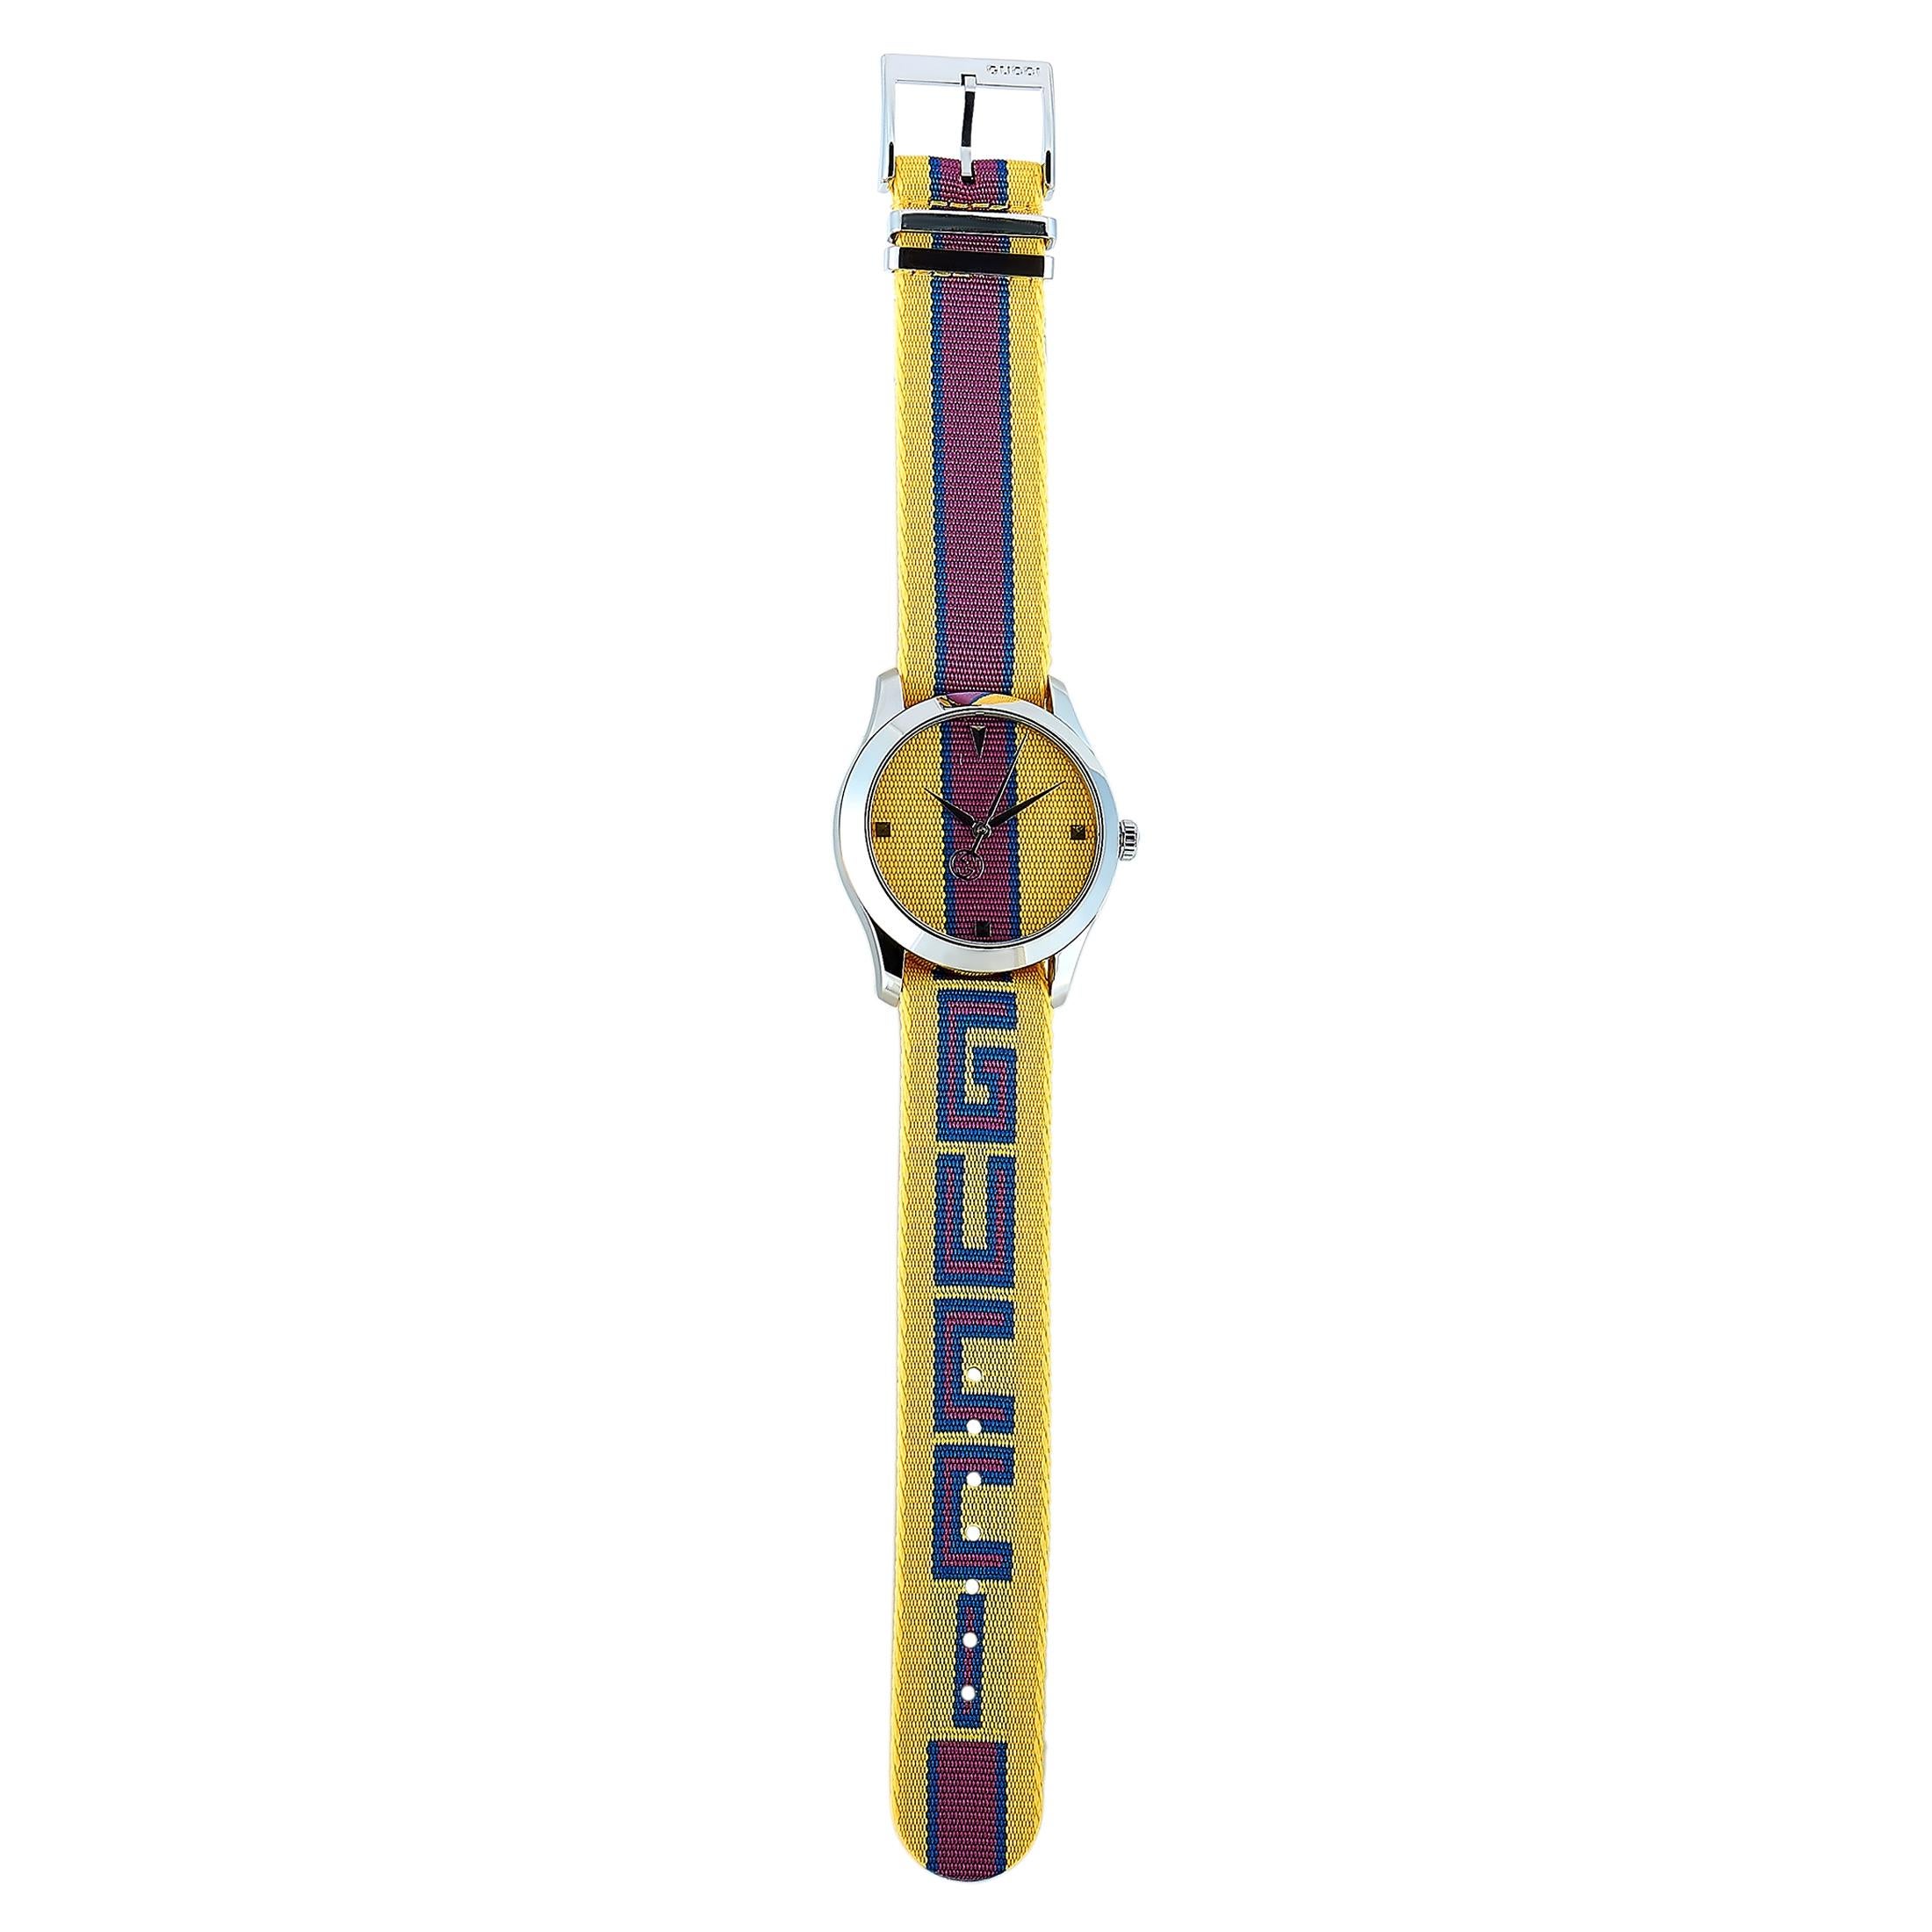 Die Gucci G-Timeless Uhr mit der Referenznummer YA1264069 wird im Rahmen der exquisiten 